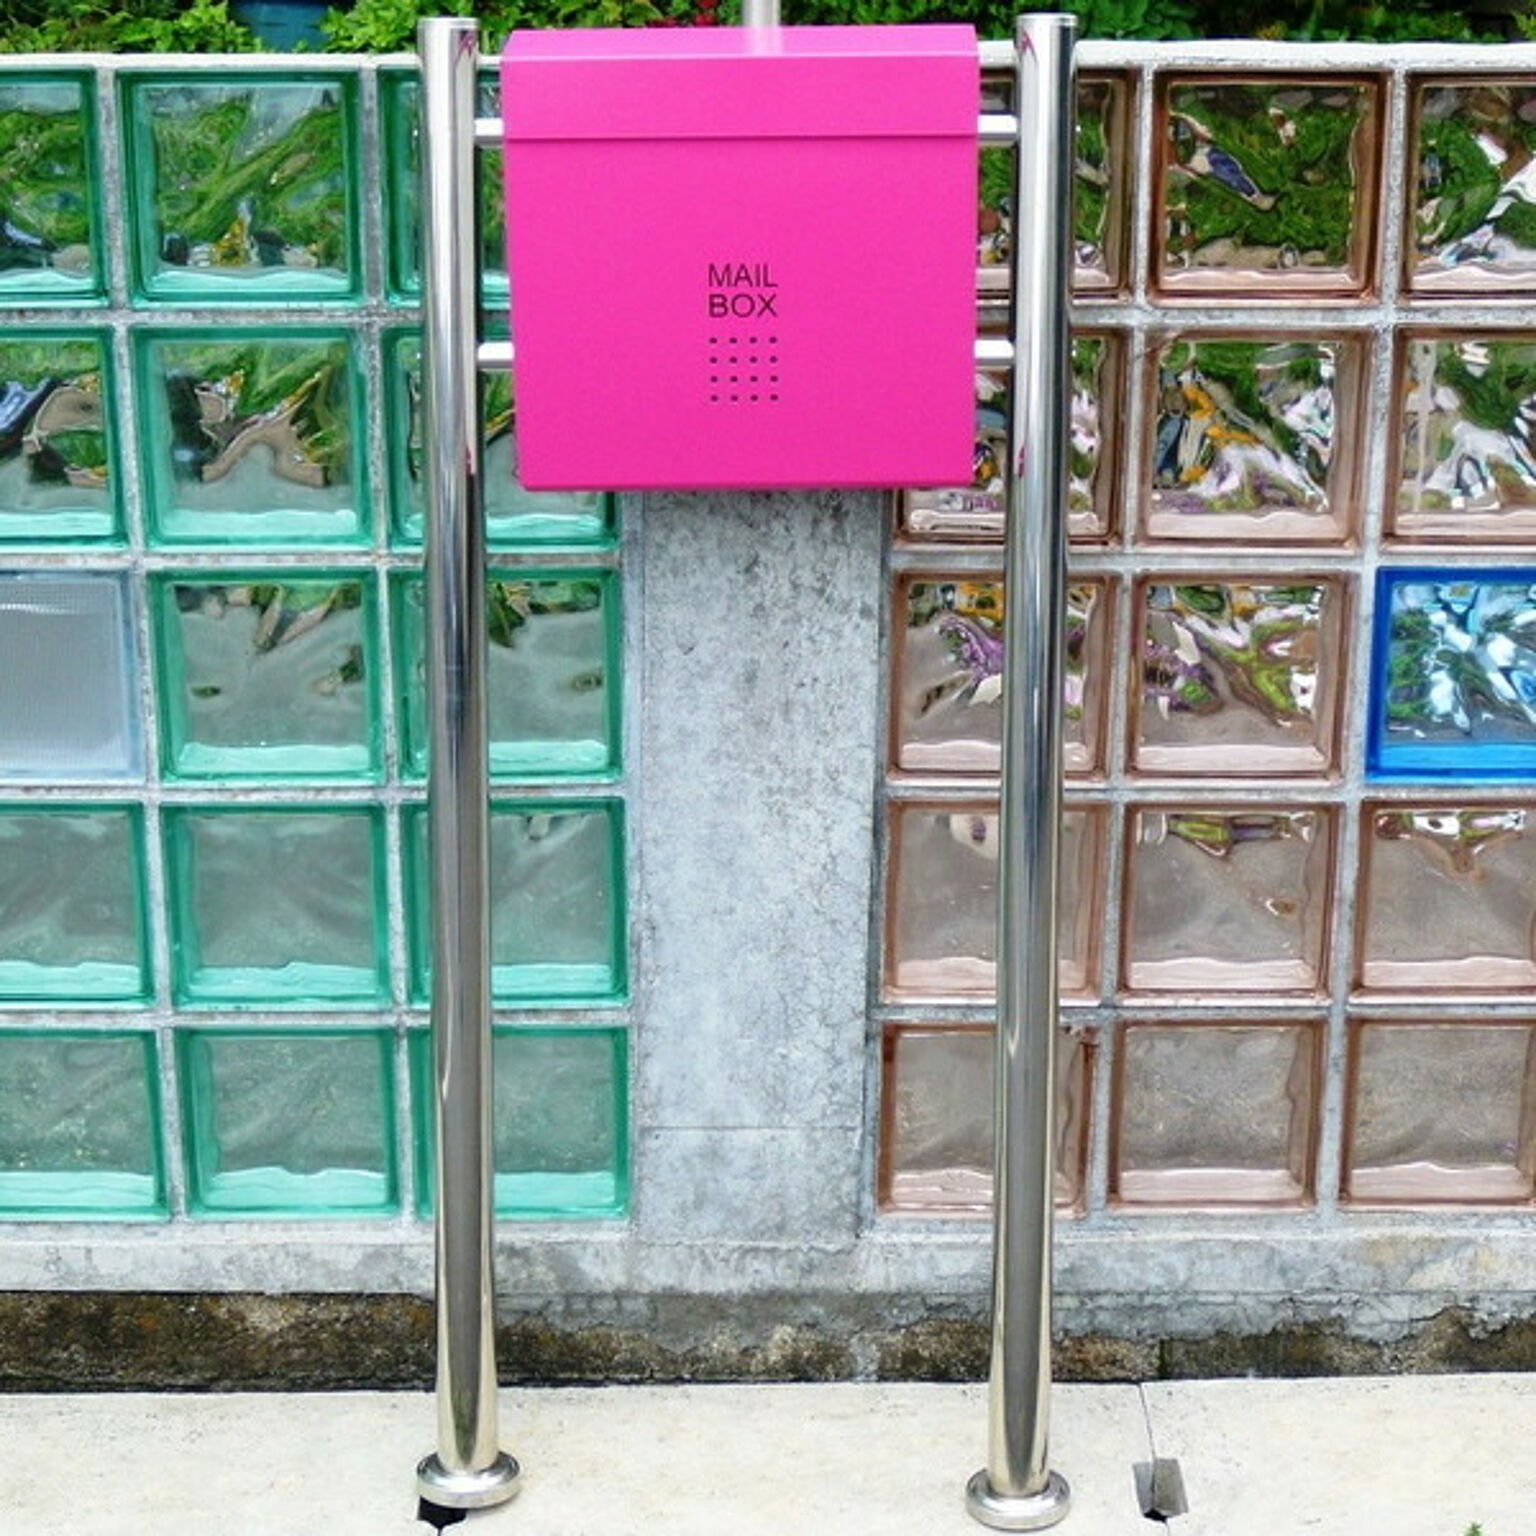 郵便ポスト郵便受けメールボックス大型メール便スタンドタイプ型マグネット付きピンク色ポスト(pink)